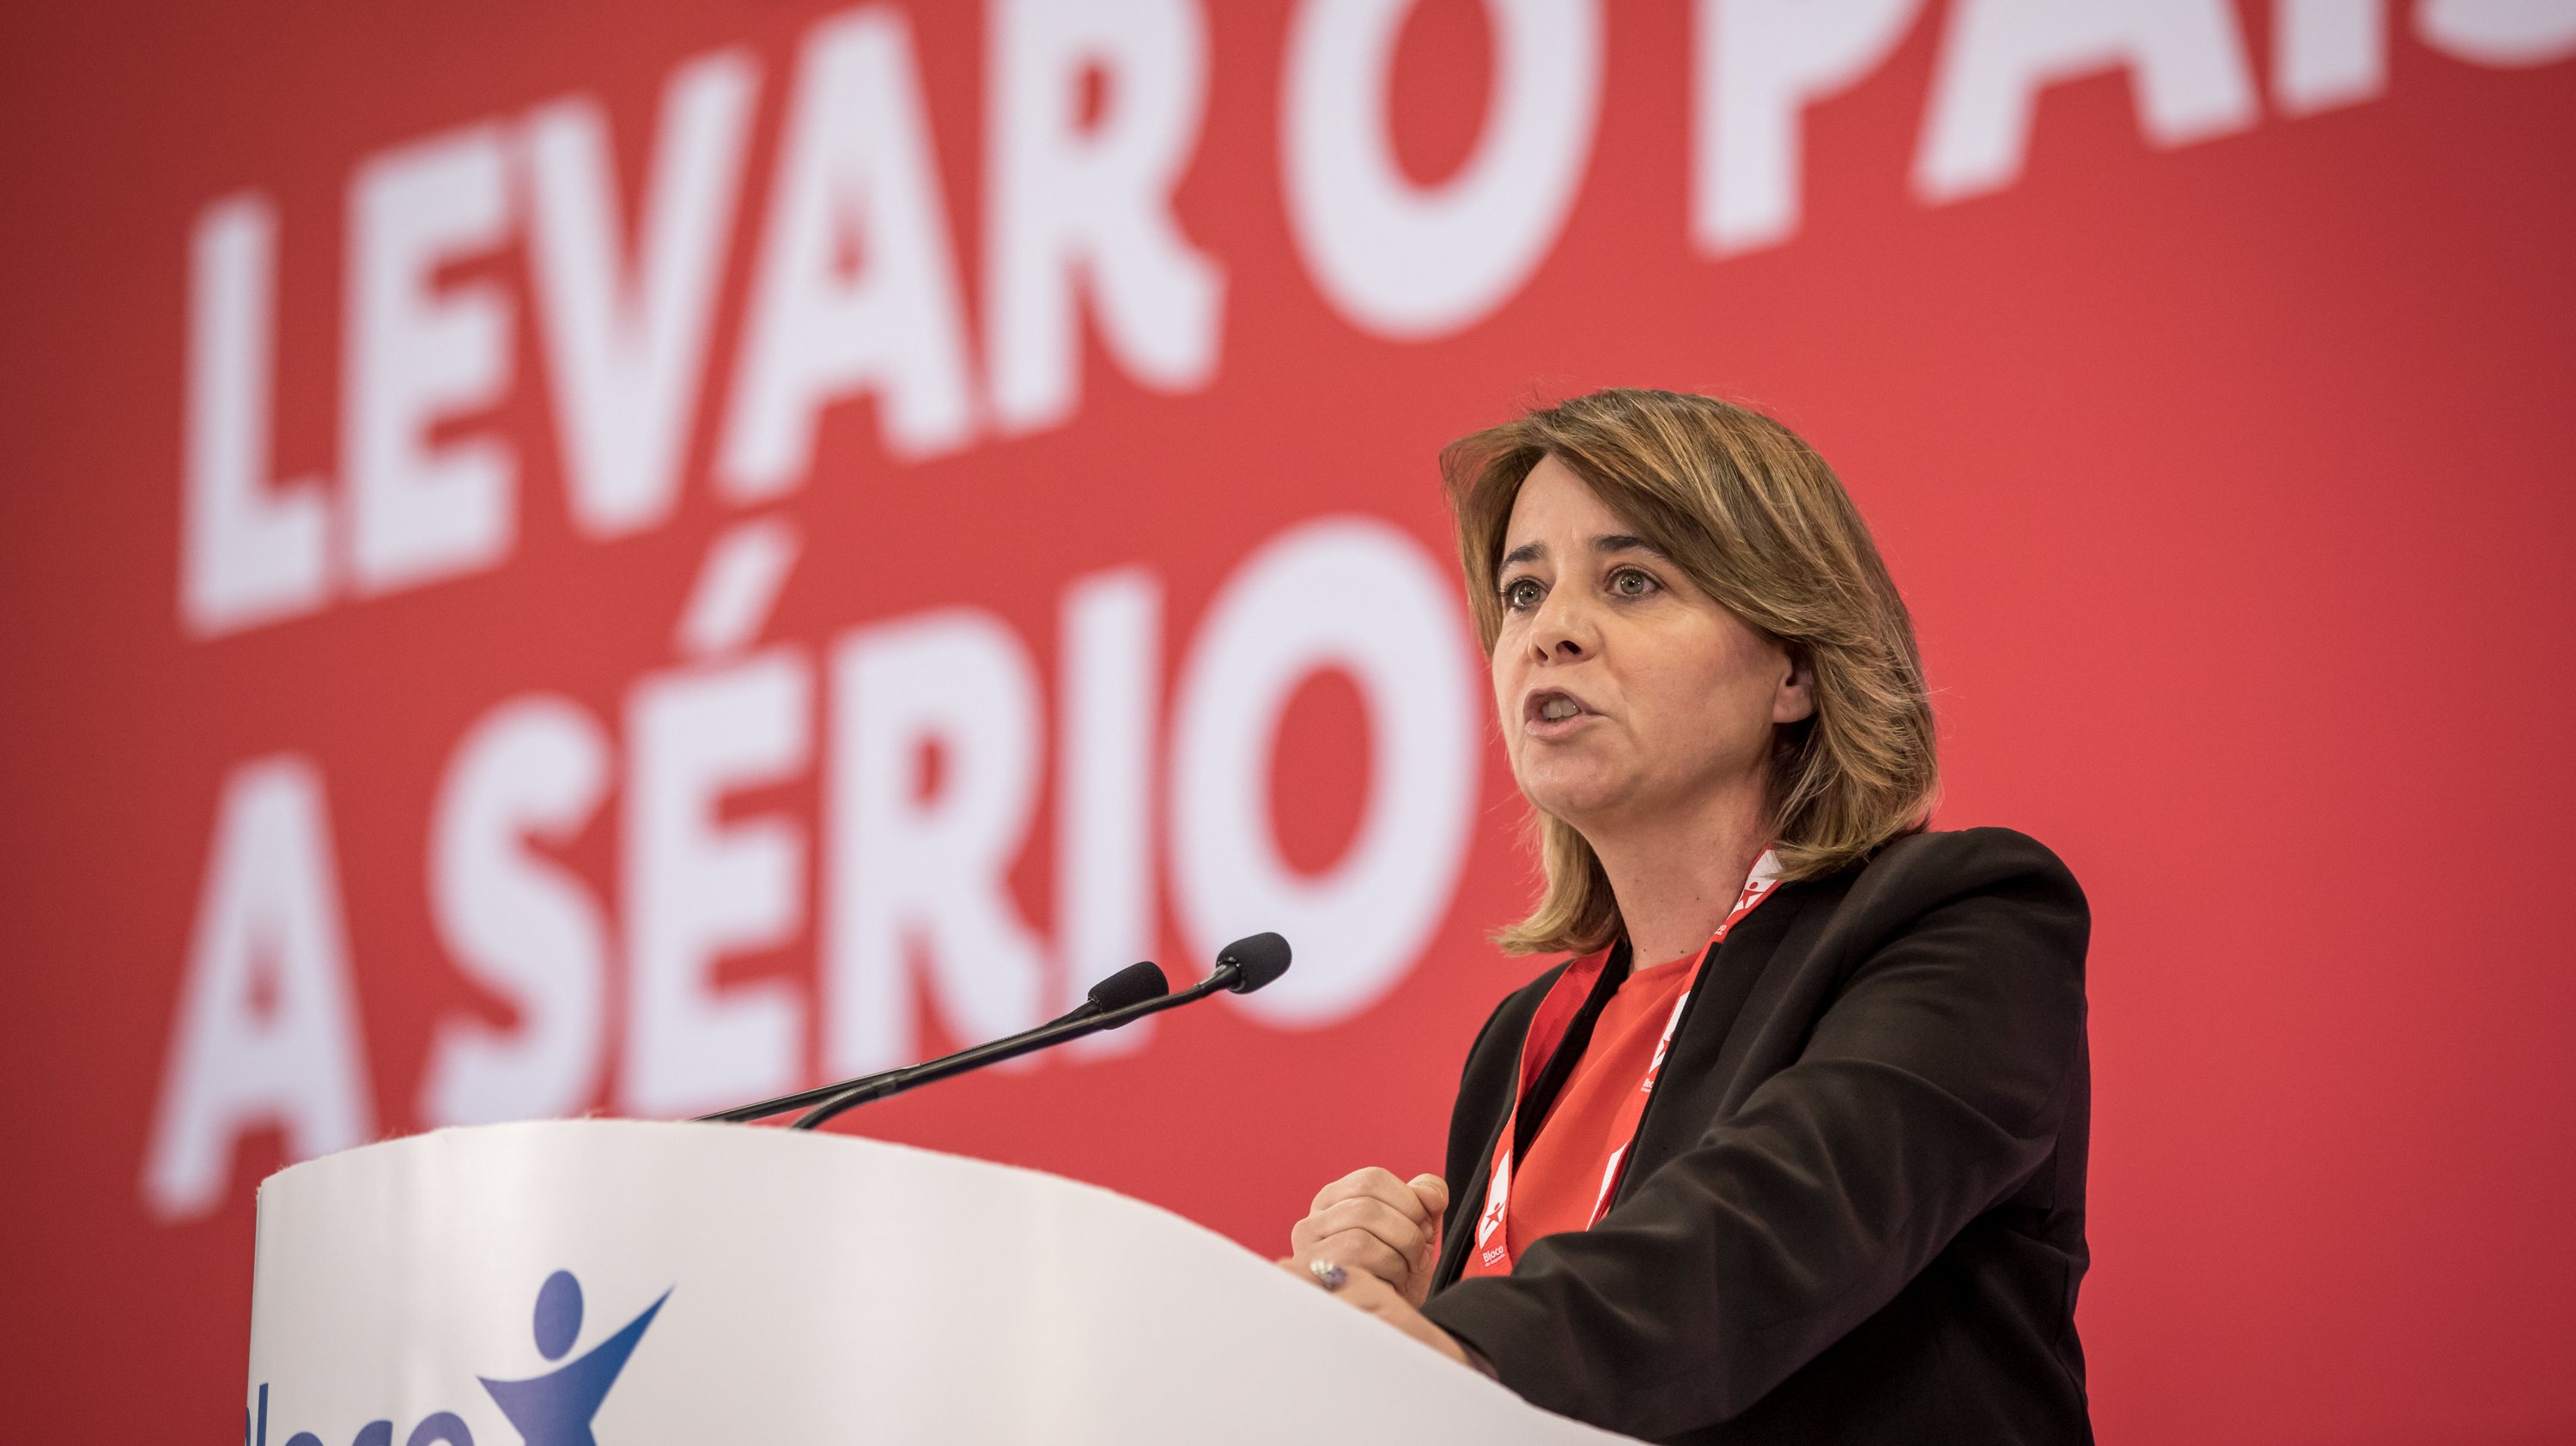 A dirigente bloquista falava aos jornalistas no âmbito de uma iniciativa de campanha para as eleições regionais da Madeira, que decorrem em 24 de setembro